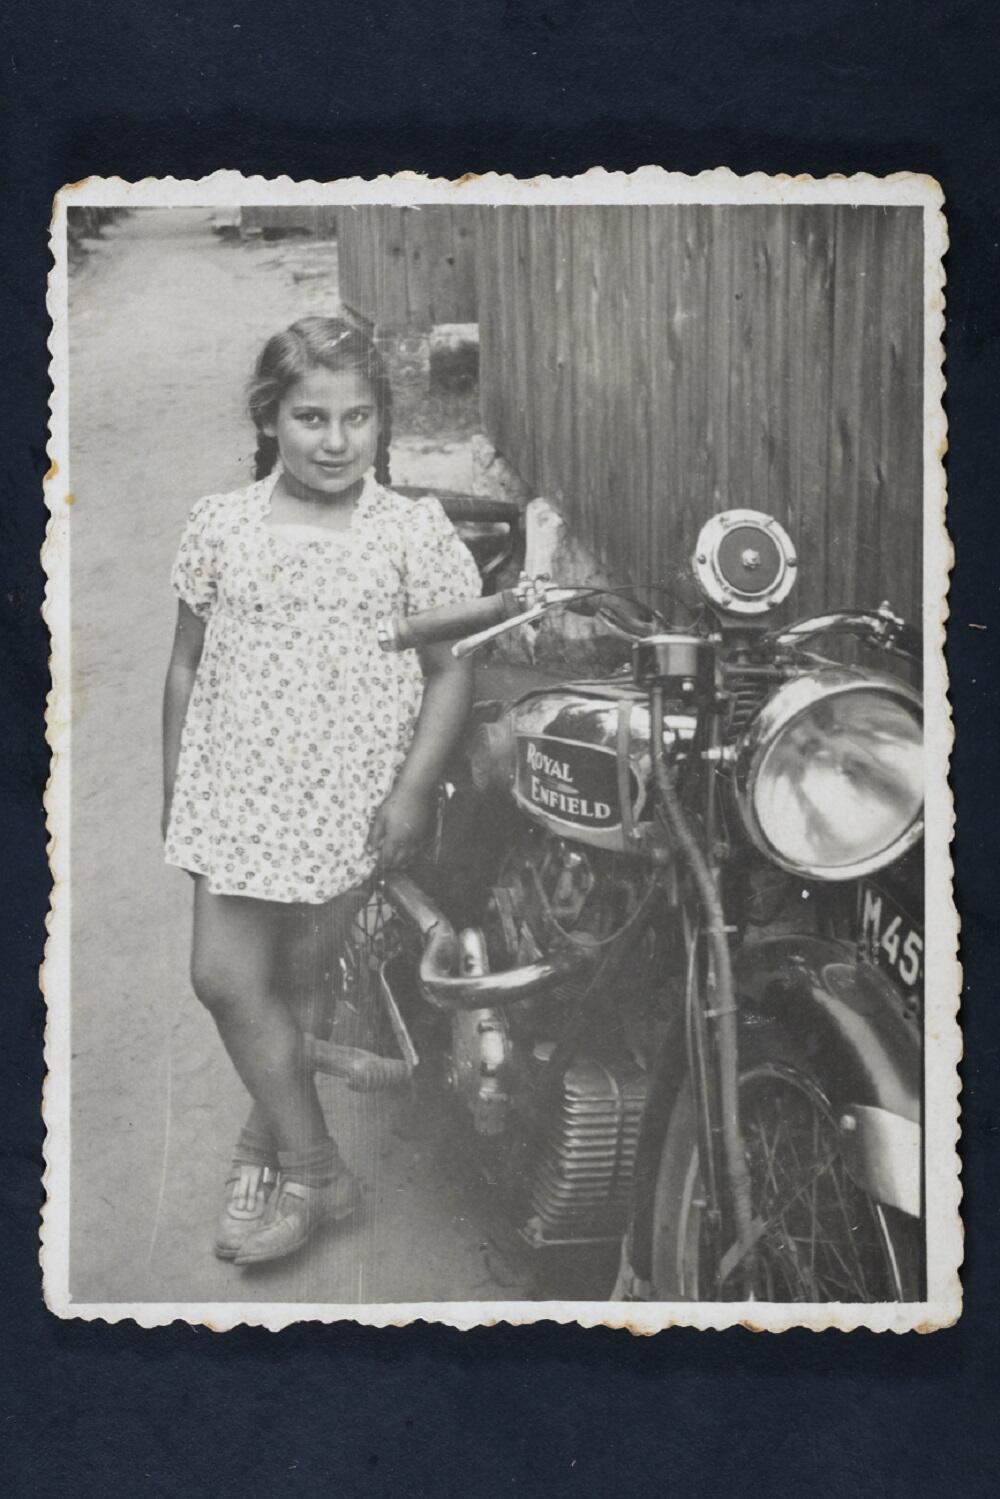 רות רושצקי ליד האופנוע של הדוד, דוד רושצקי, לודז' 1939